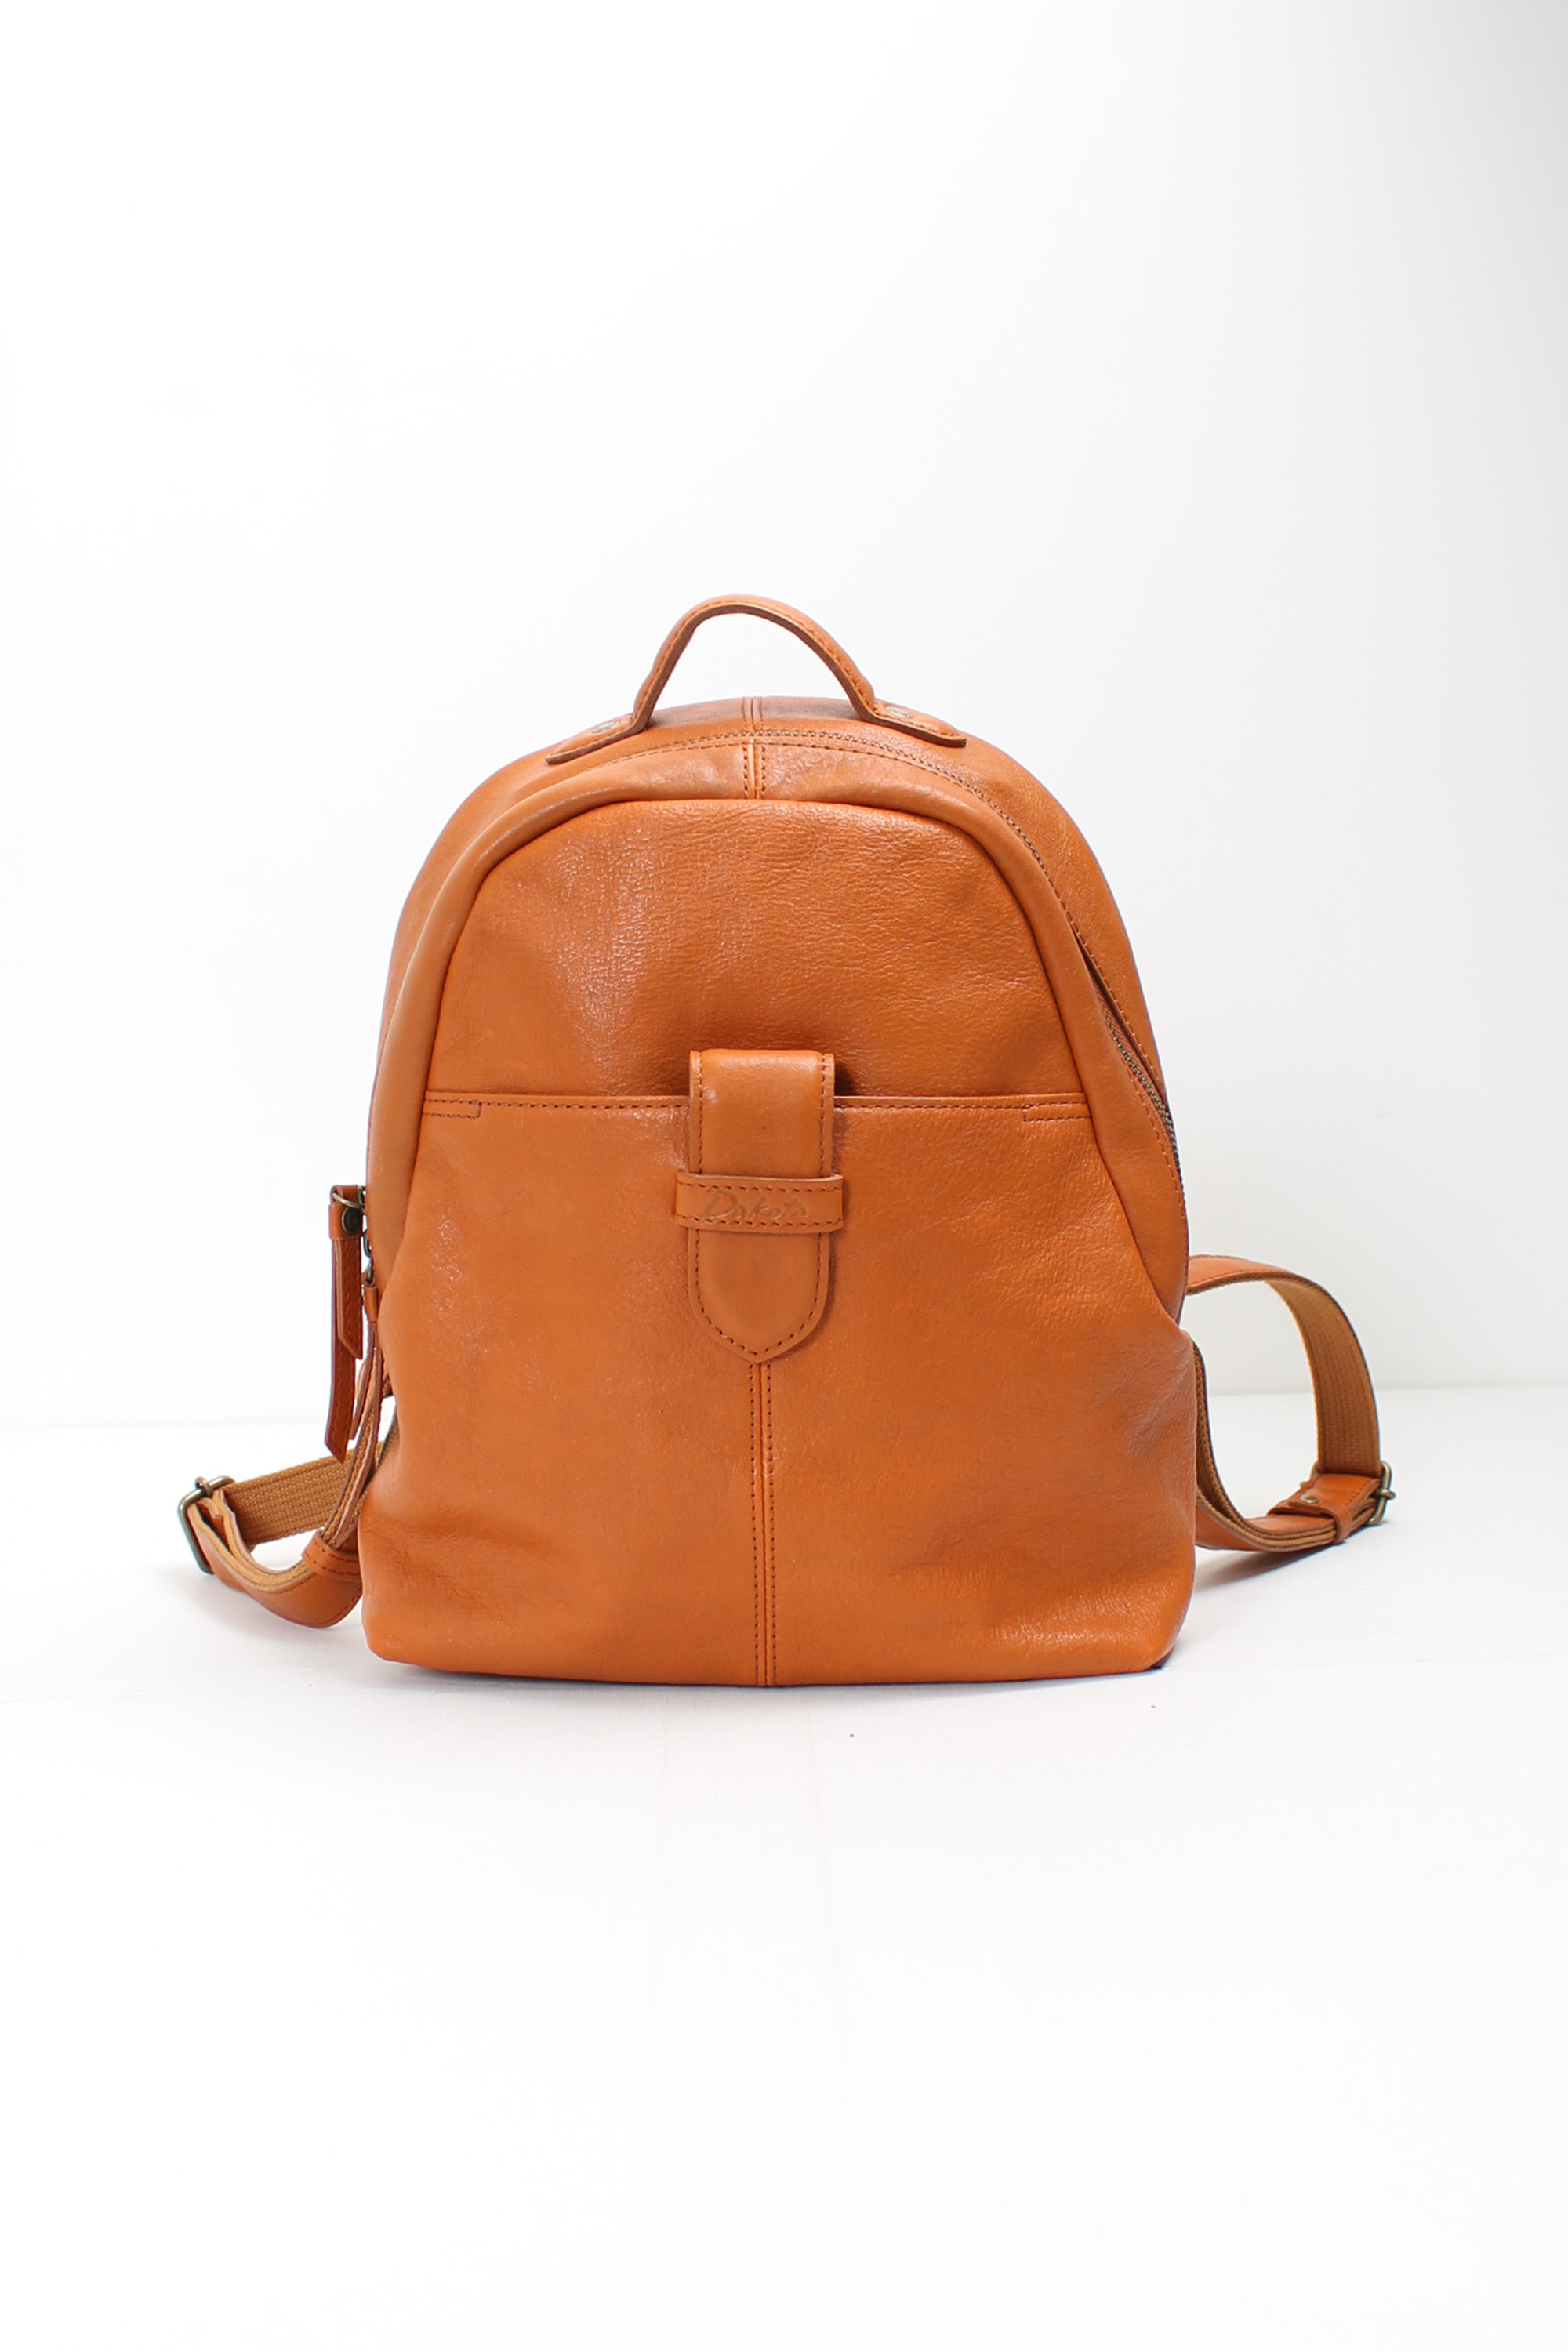 Dakota leather backpack